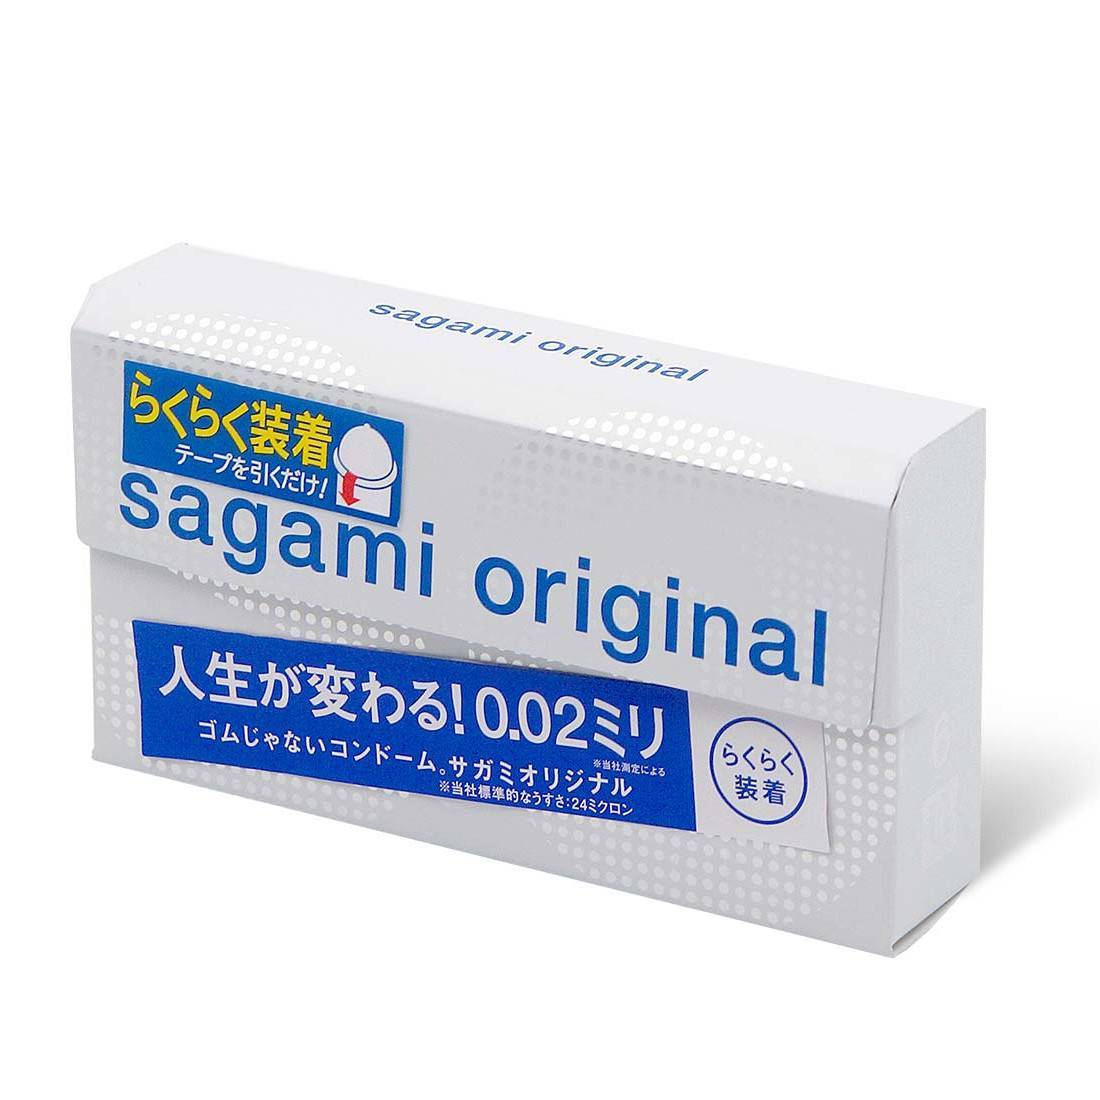 Презервативы SAGAMI Original Quick 002 полиуретановые 6шт. 143143